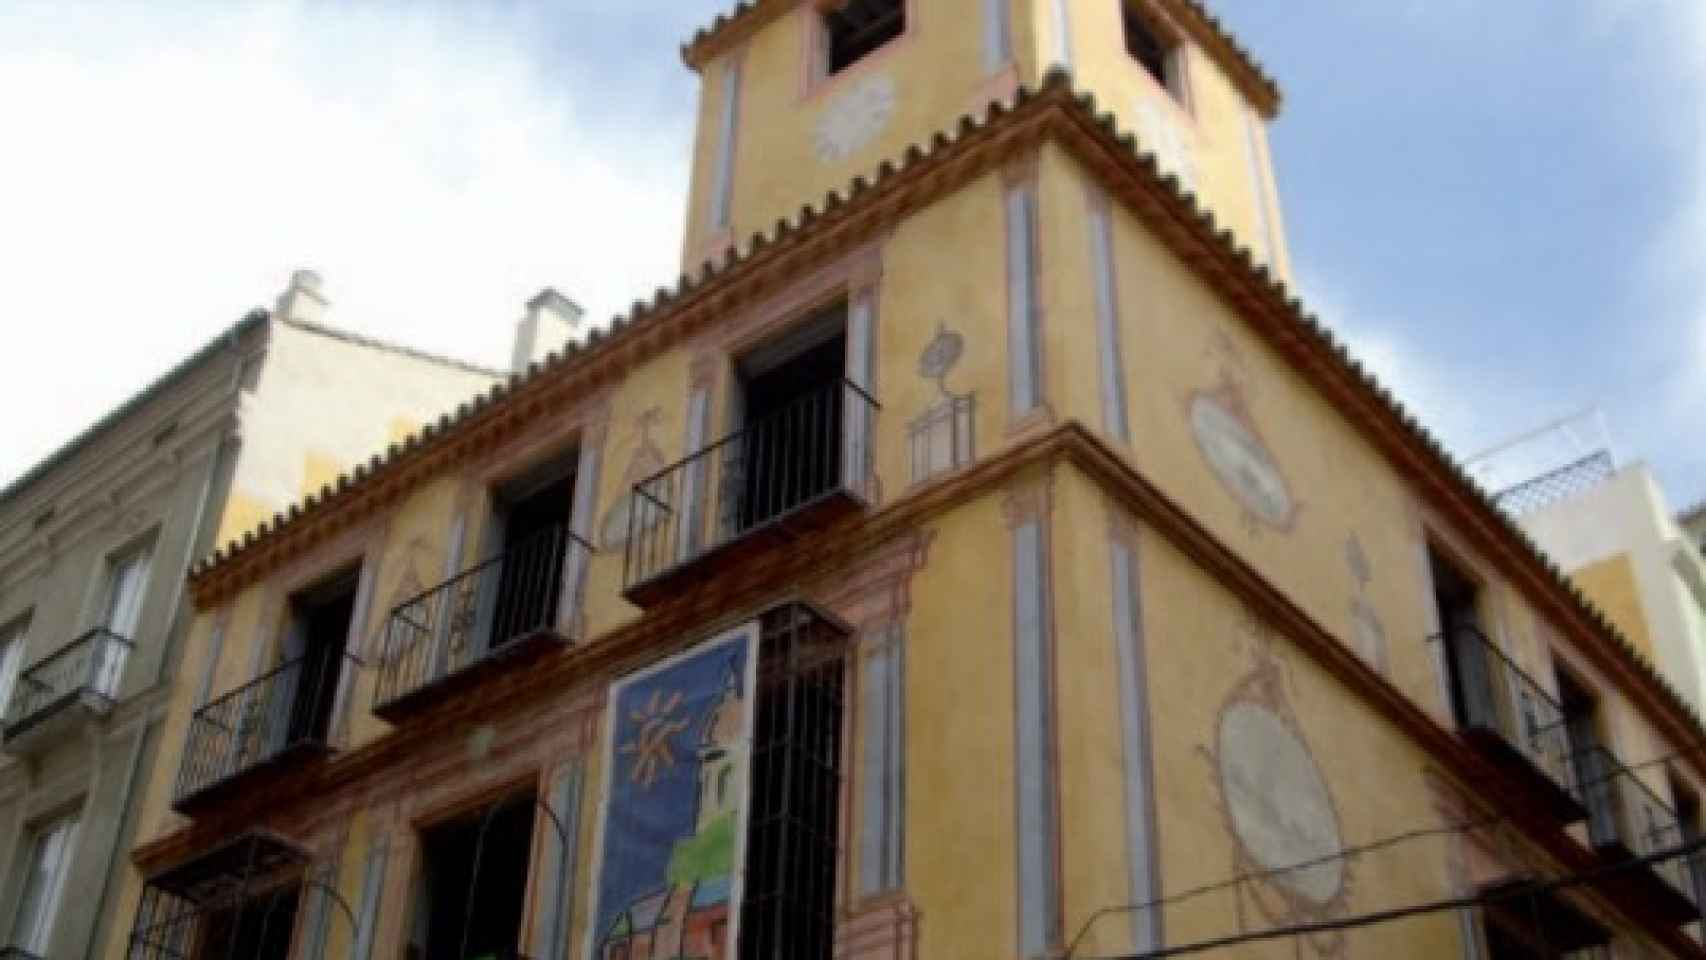 Imagen de uno de los edificios de Málaga con pinturas murales recuperadas.